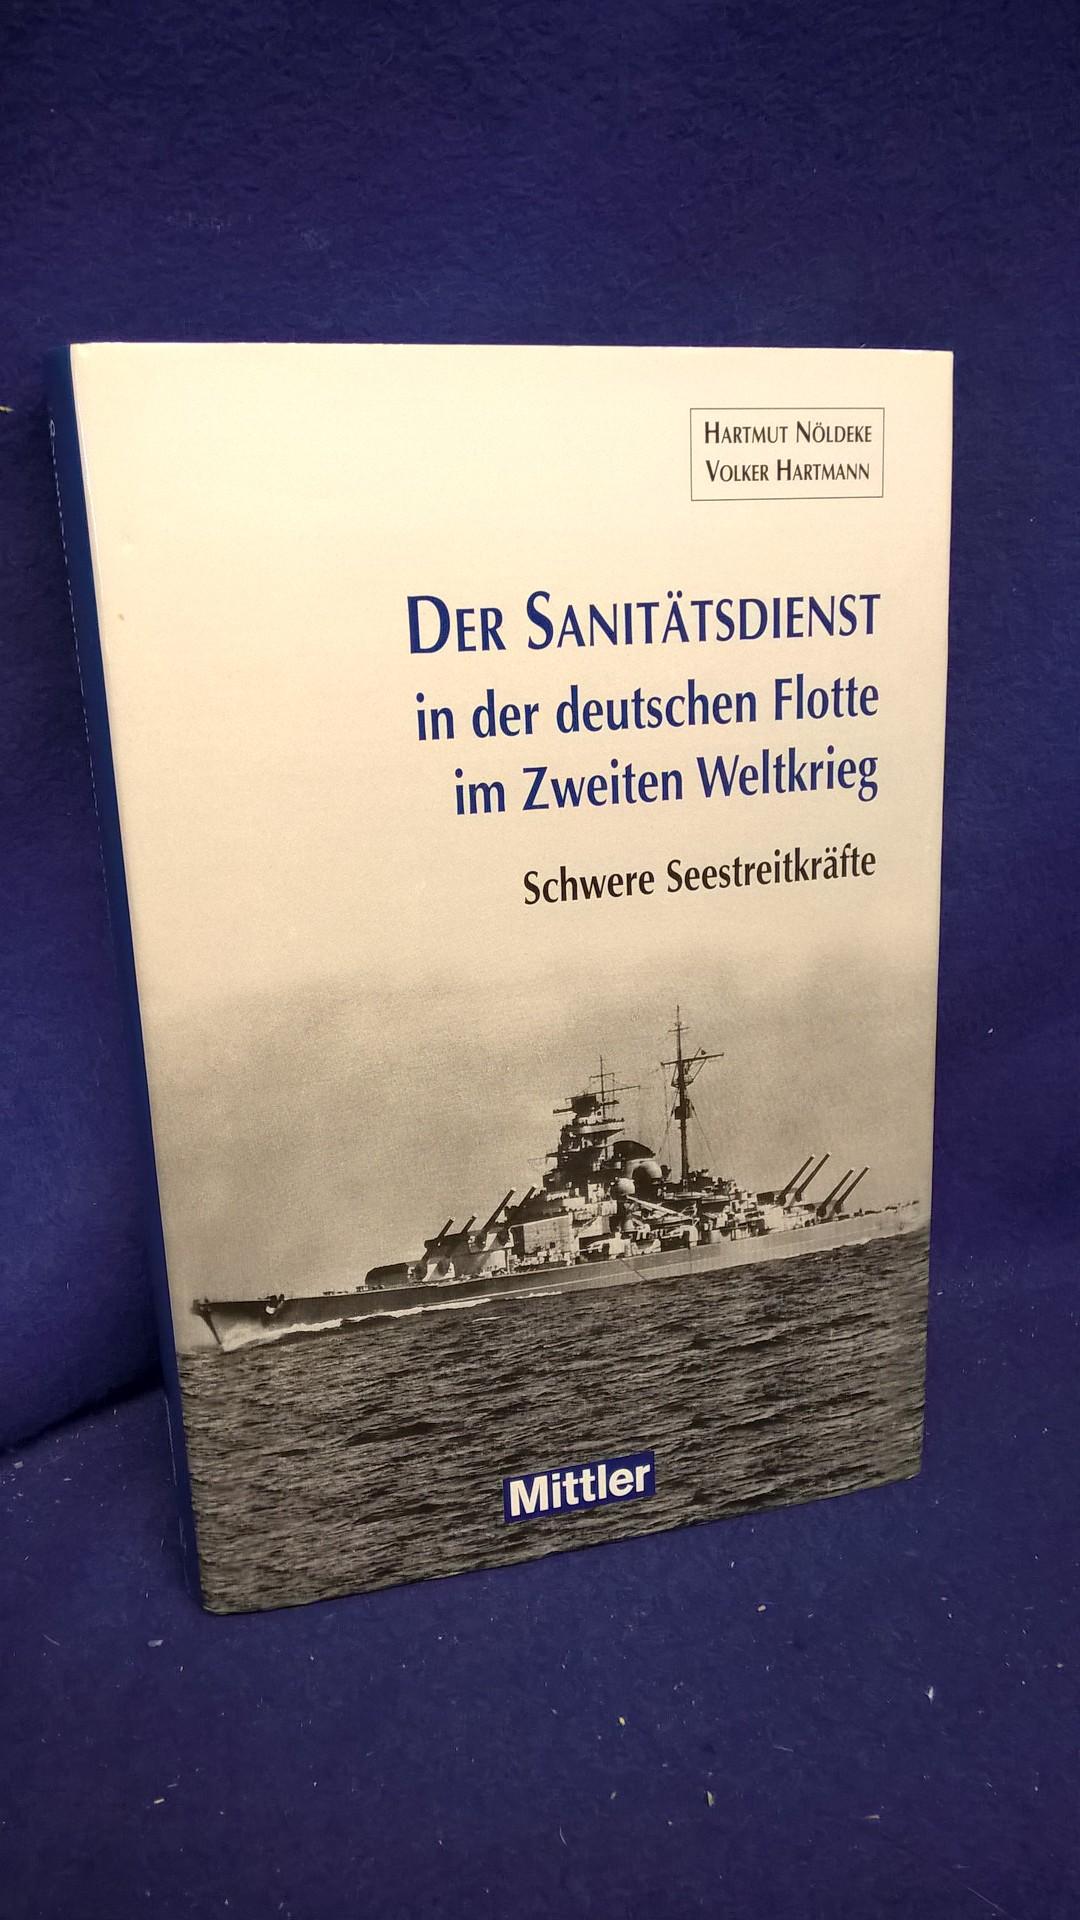 Der Sanitätsdienst in der deutschen Flotte im Zweiten Weltkrieg. Schwere Seestreitkräfte. Organisation, medizinische Wissenschaft, Erfahrung und Leben.